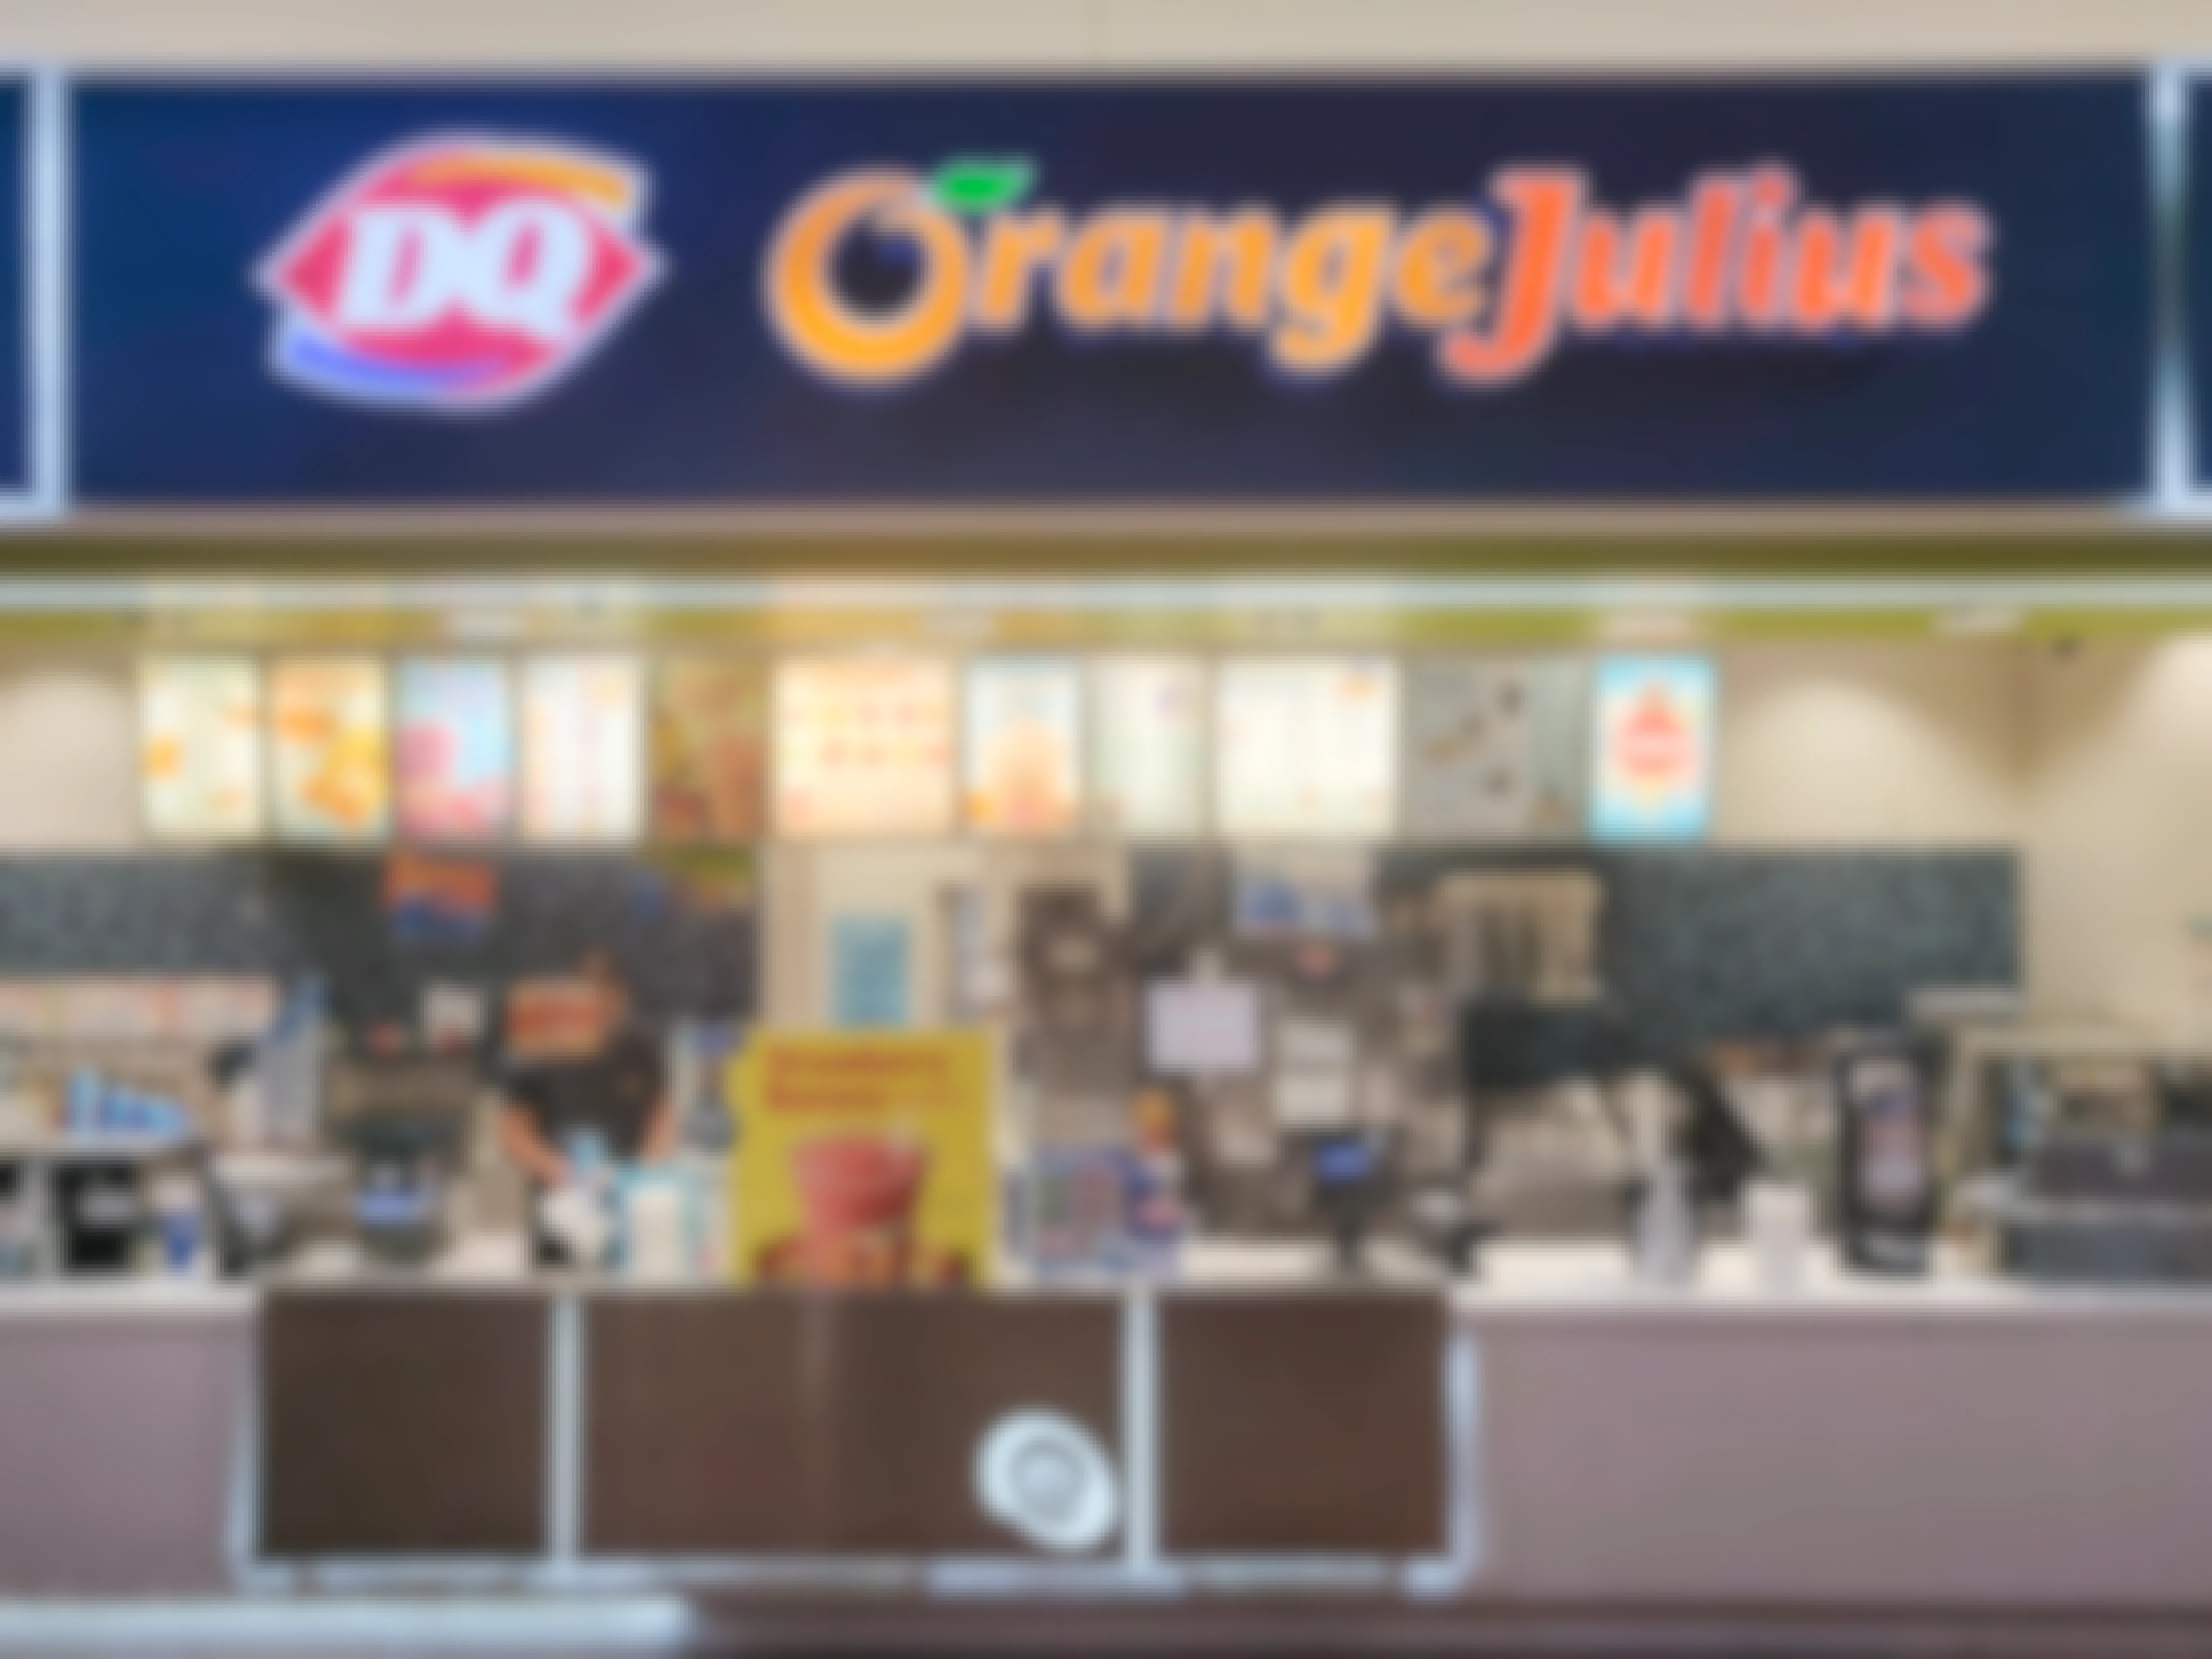 DQ and Orange Julius restaurant counter